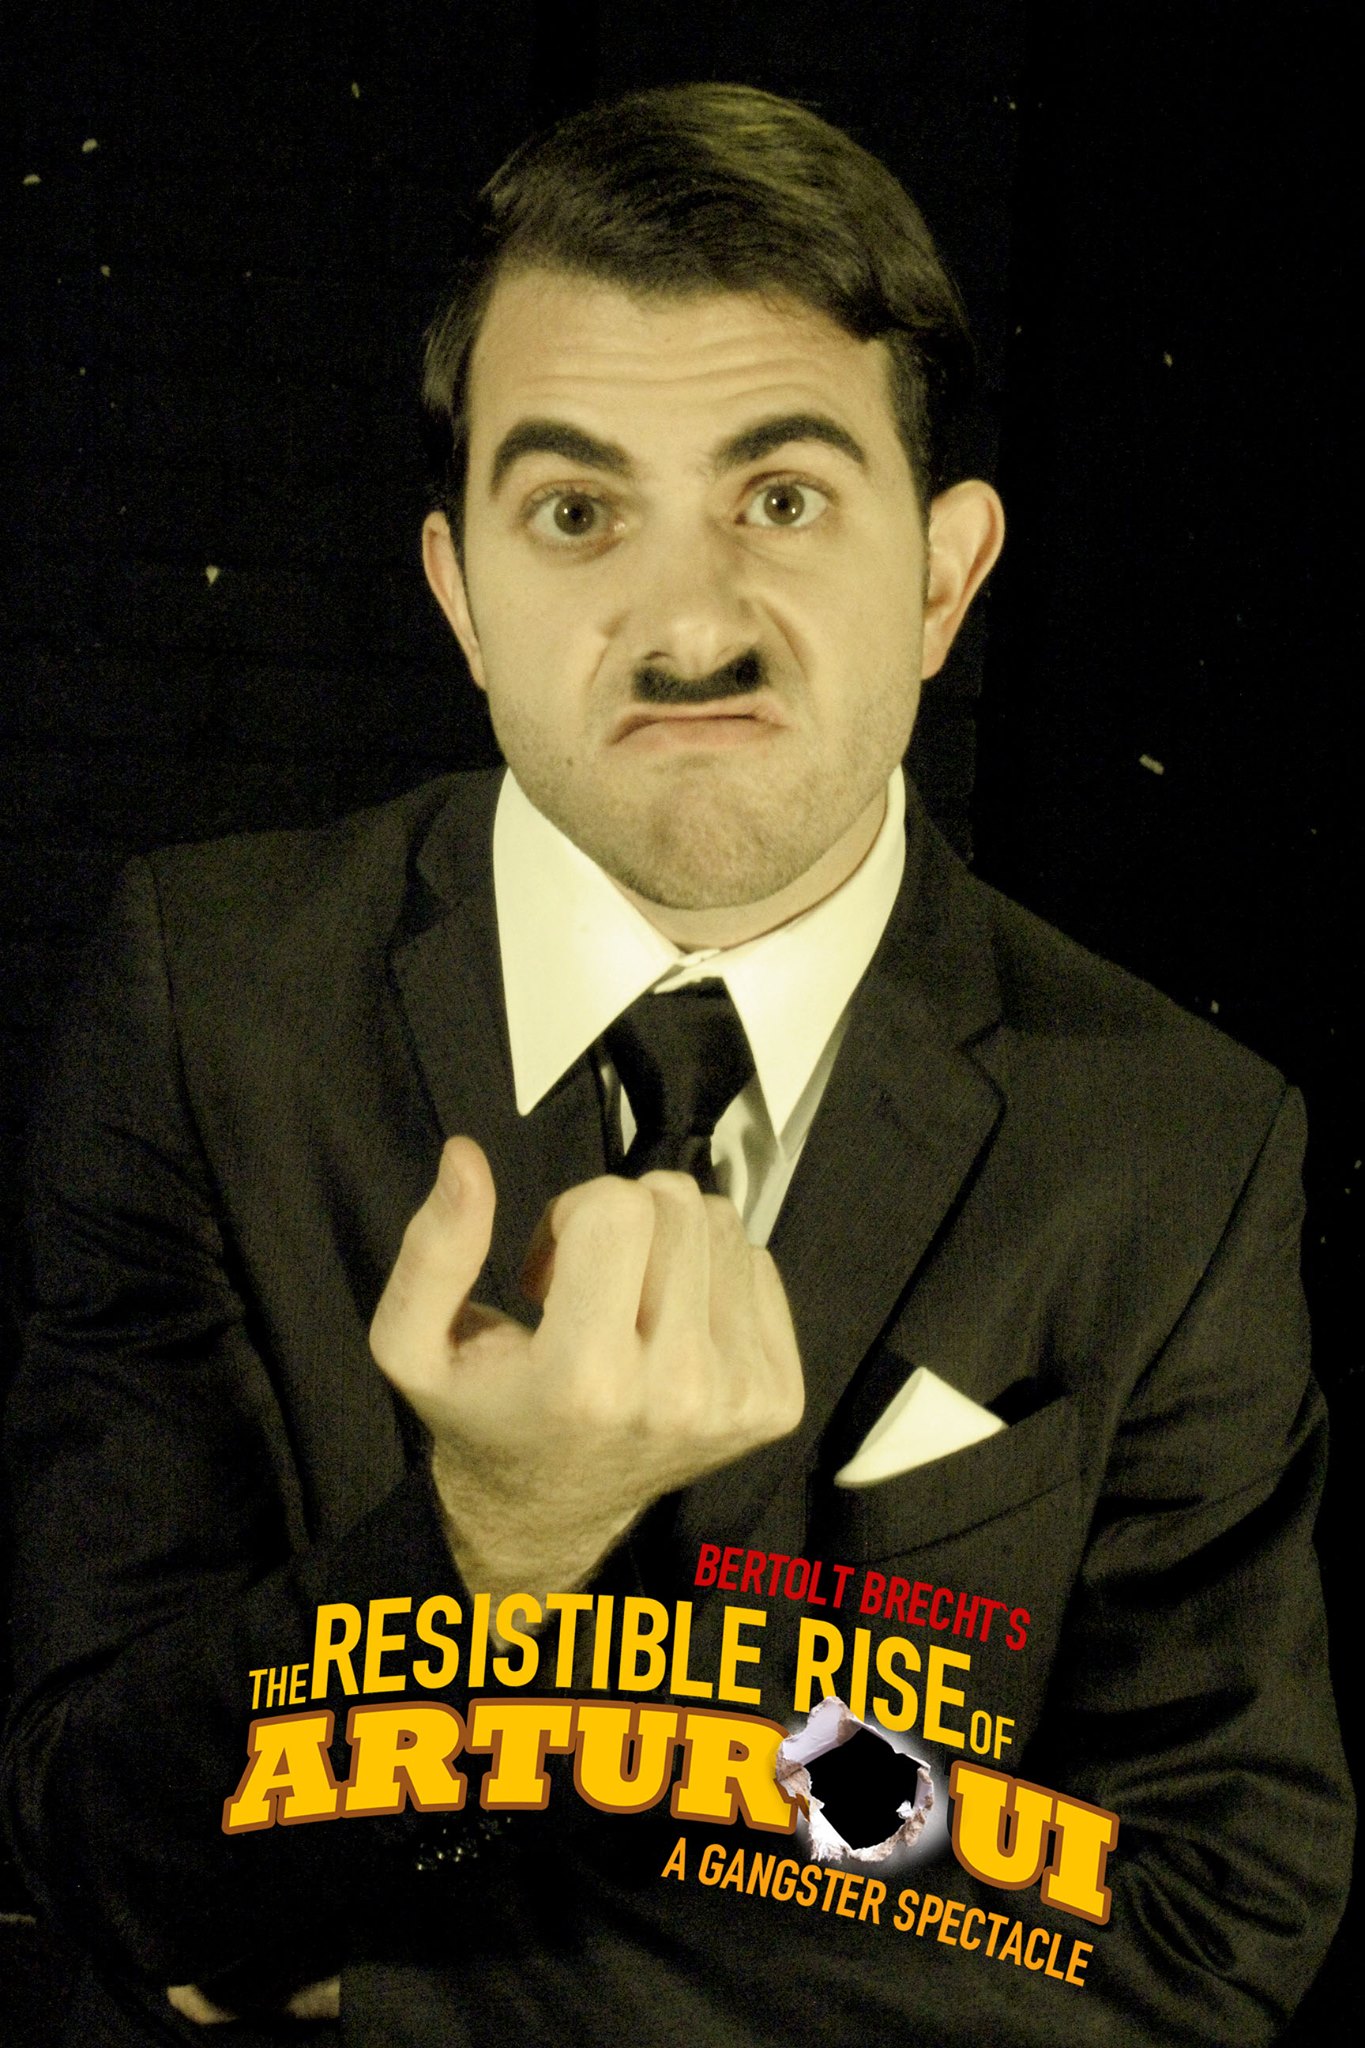 Rolandos Liatsos as Arturo Ui in Brecht's play 